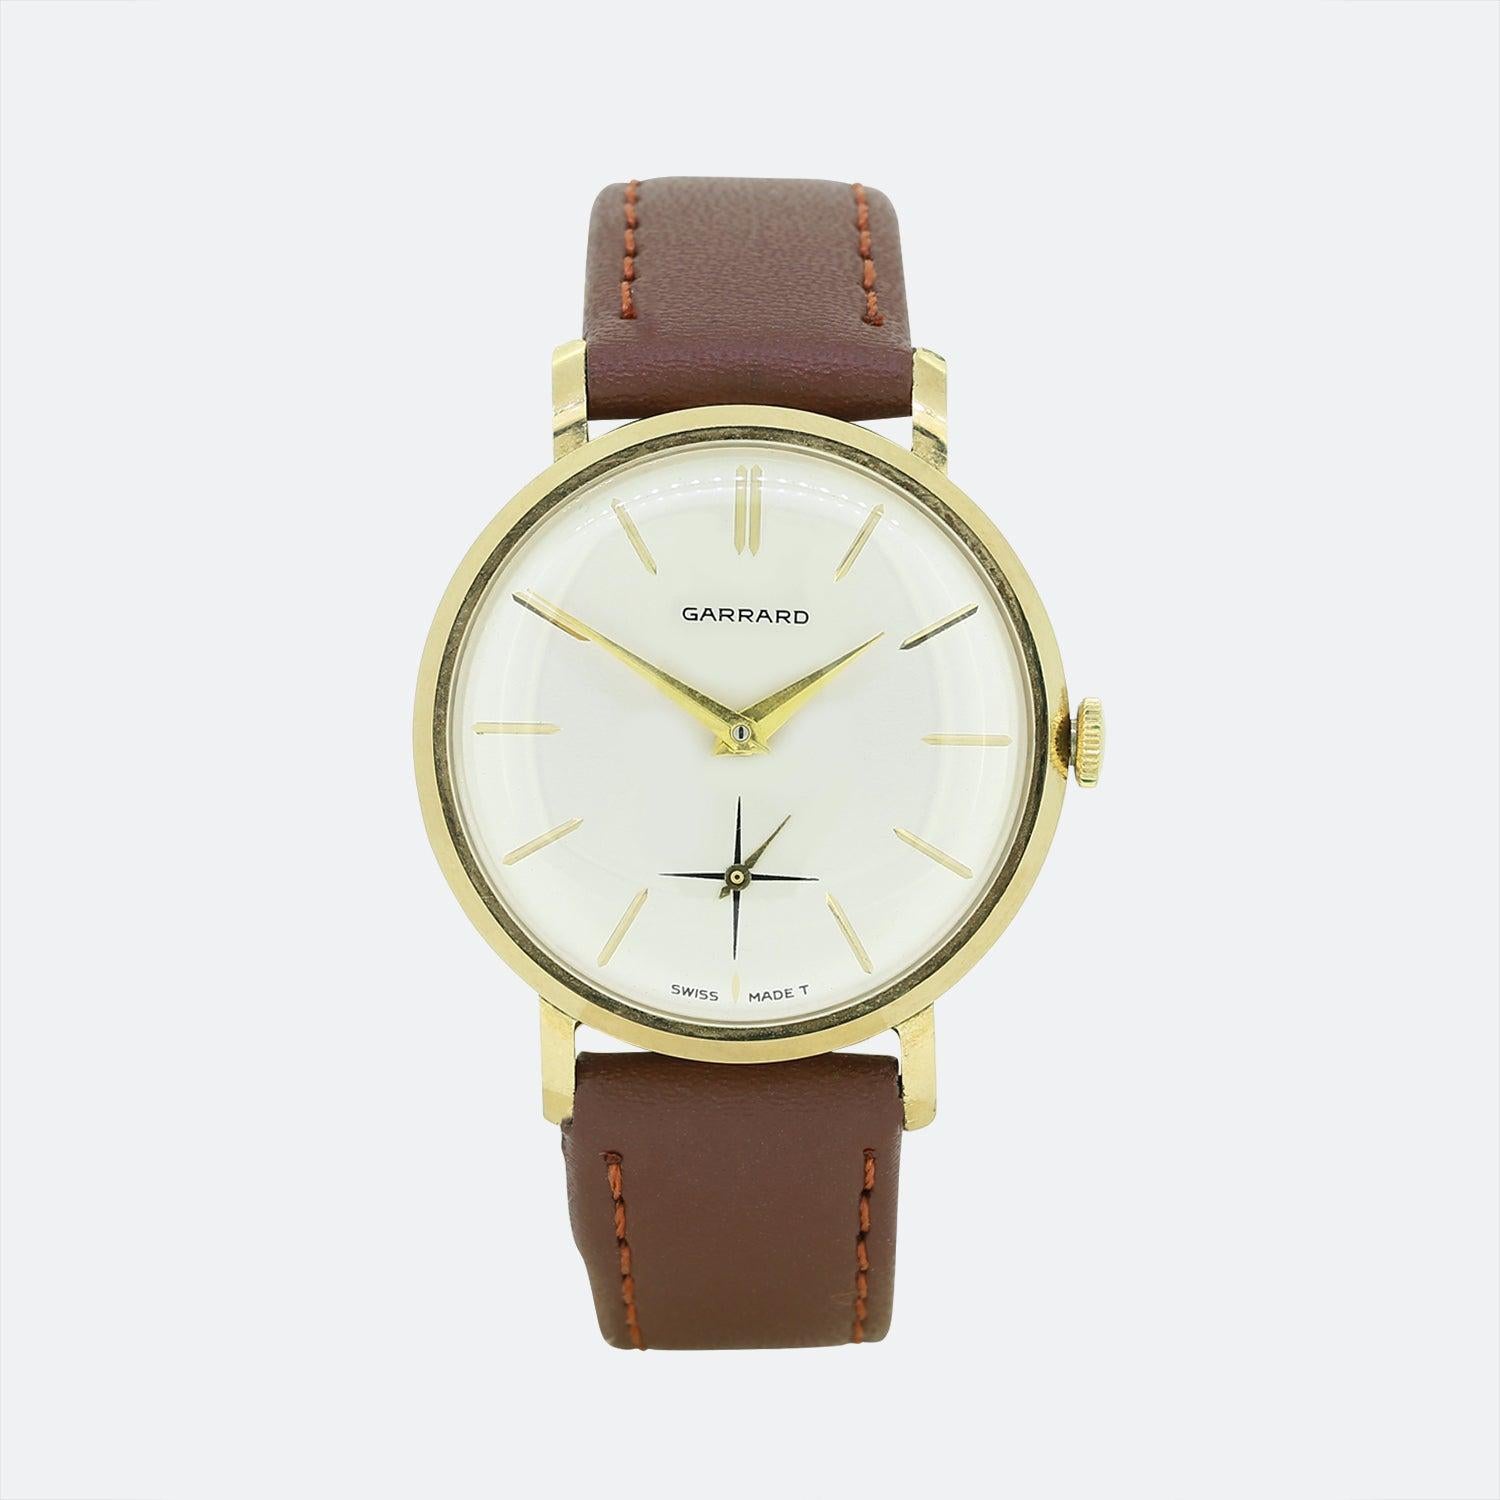 Dies ist eine entzückende Vintage-Armbanduhr des Luxusschmuckdesigners Garrard. Die Uhr hat ein rundes Zifferblatt mit silberfarbenem Zifferblatt, goldenen Stundenmarkierungen und goldenen Zeigern. Außerdem verfügt sie über ein Sekundenzifferblatt